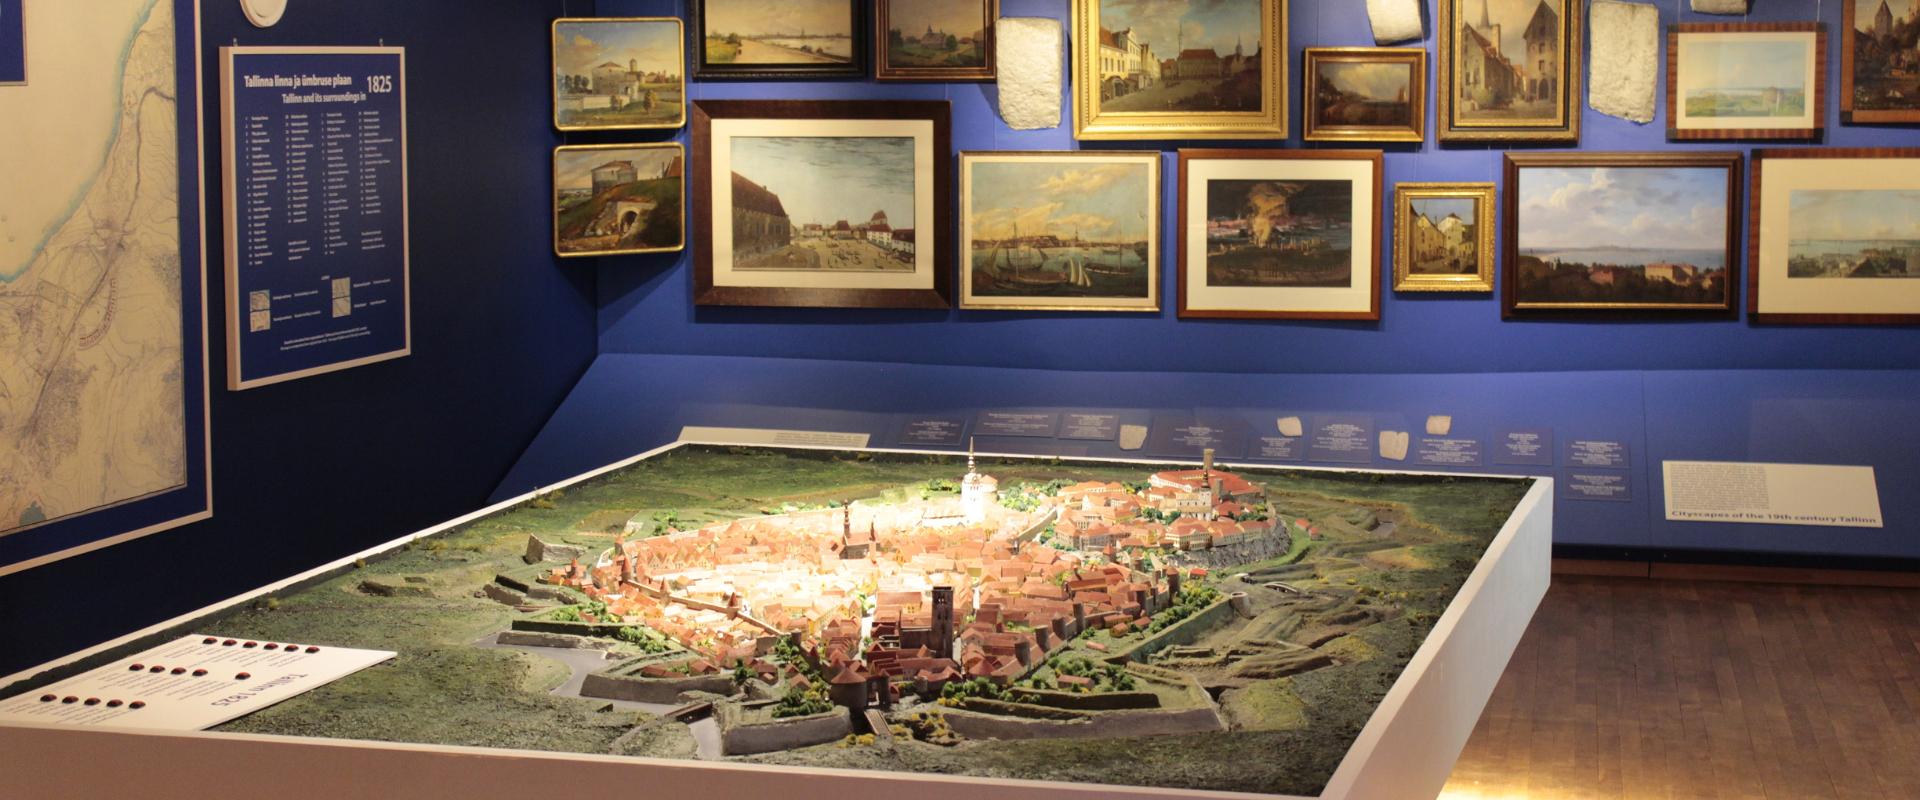 Tallinnan kaupunkielämän museo